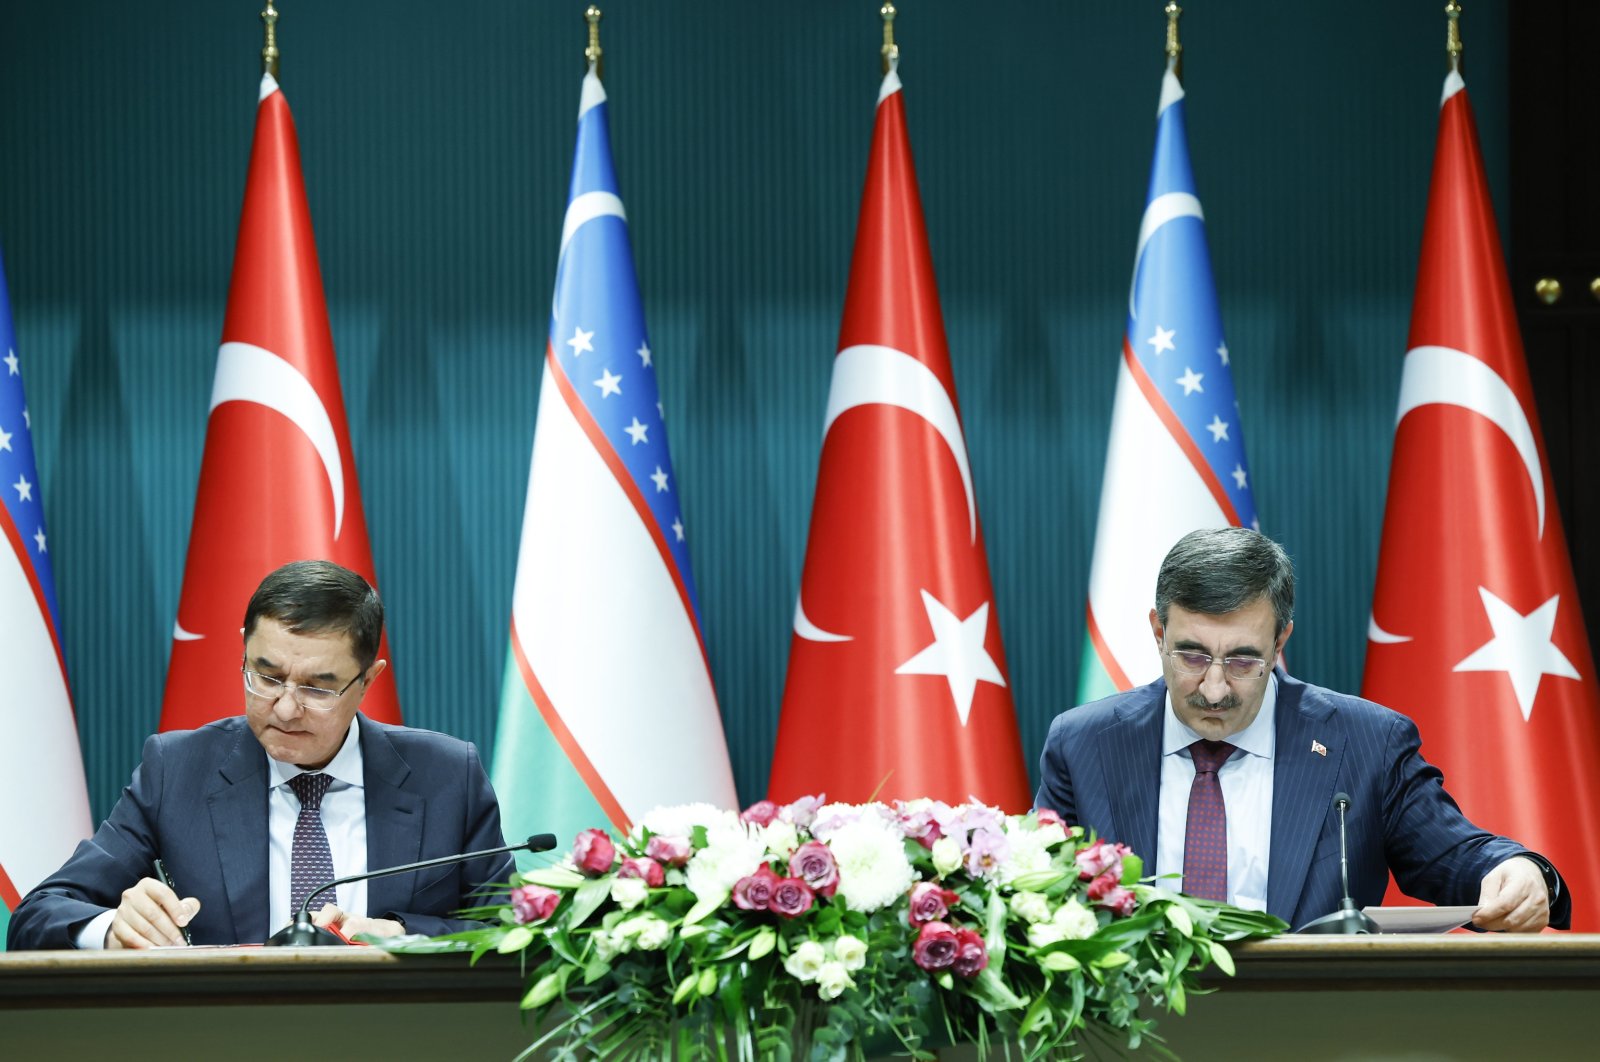 Türkiye, özel sektör aracılığıyla Özbekistan'la ticareti artırmayı hedefliyor